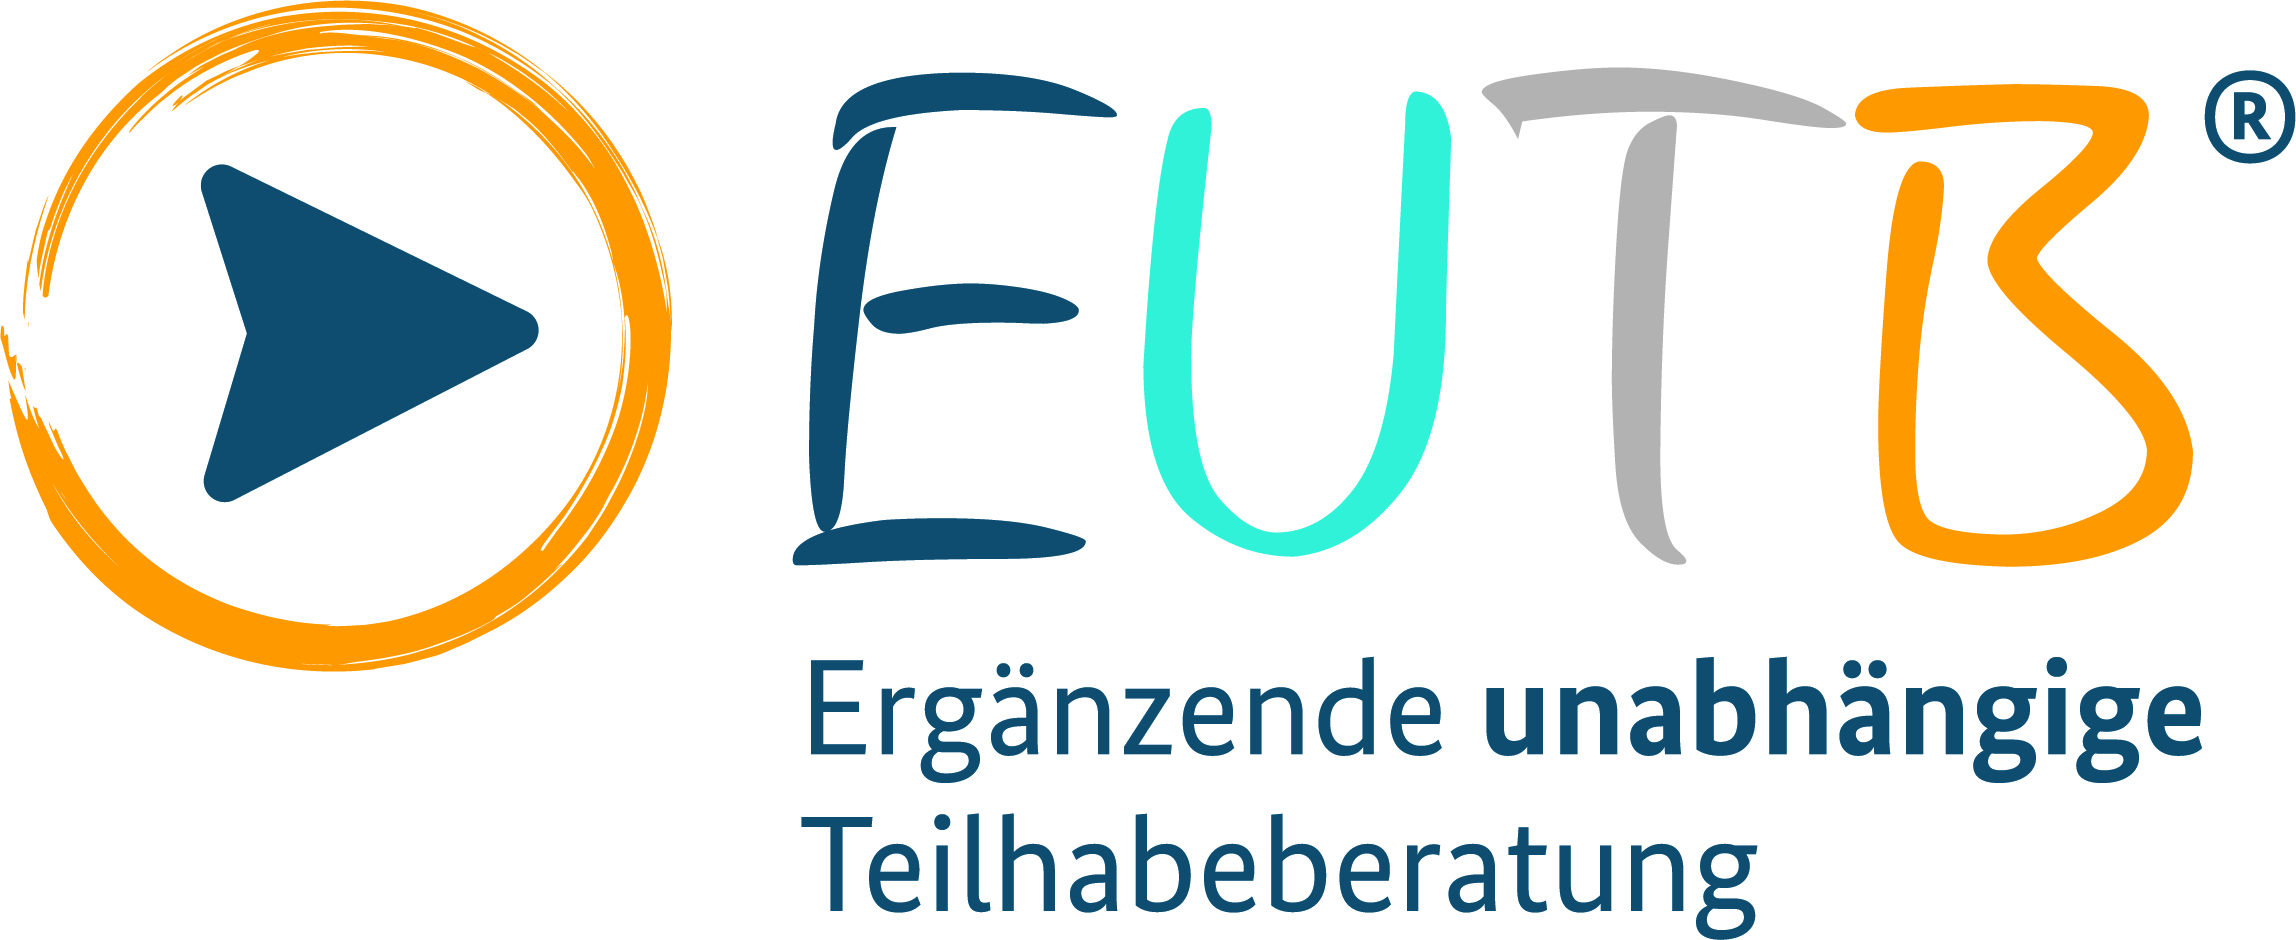 EUTB Logo mit Unterzeile